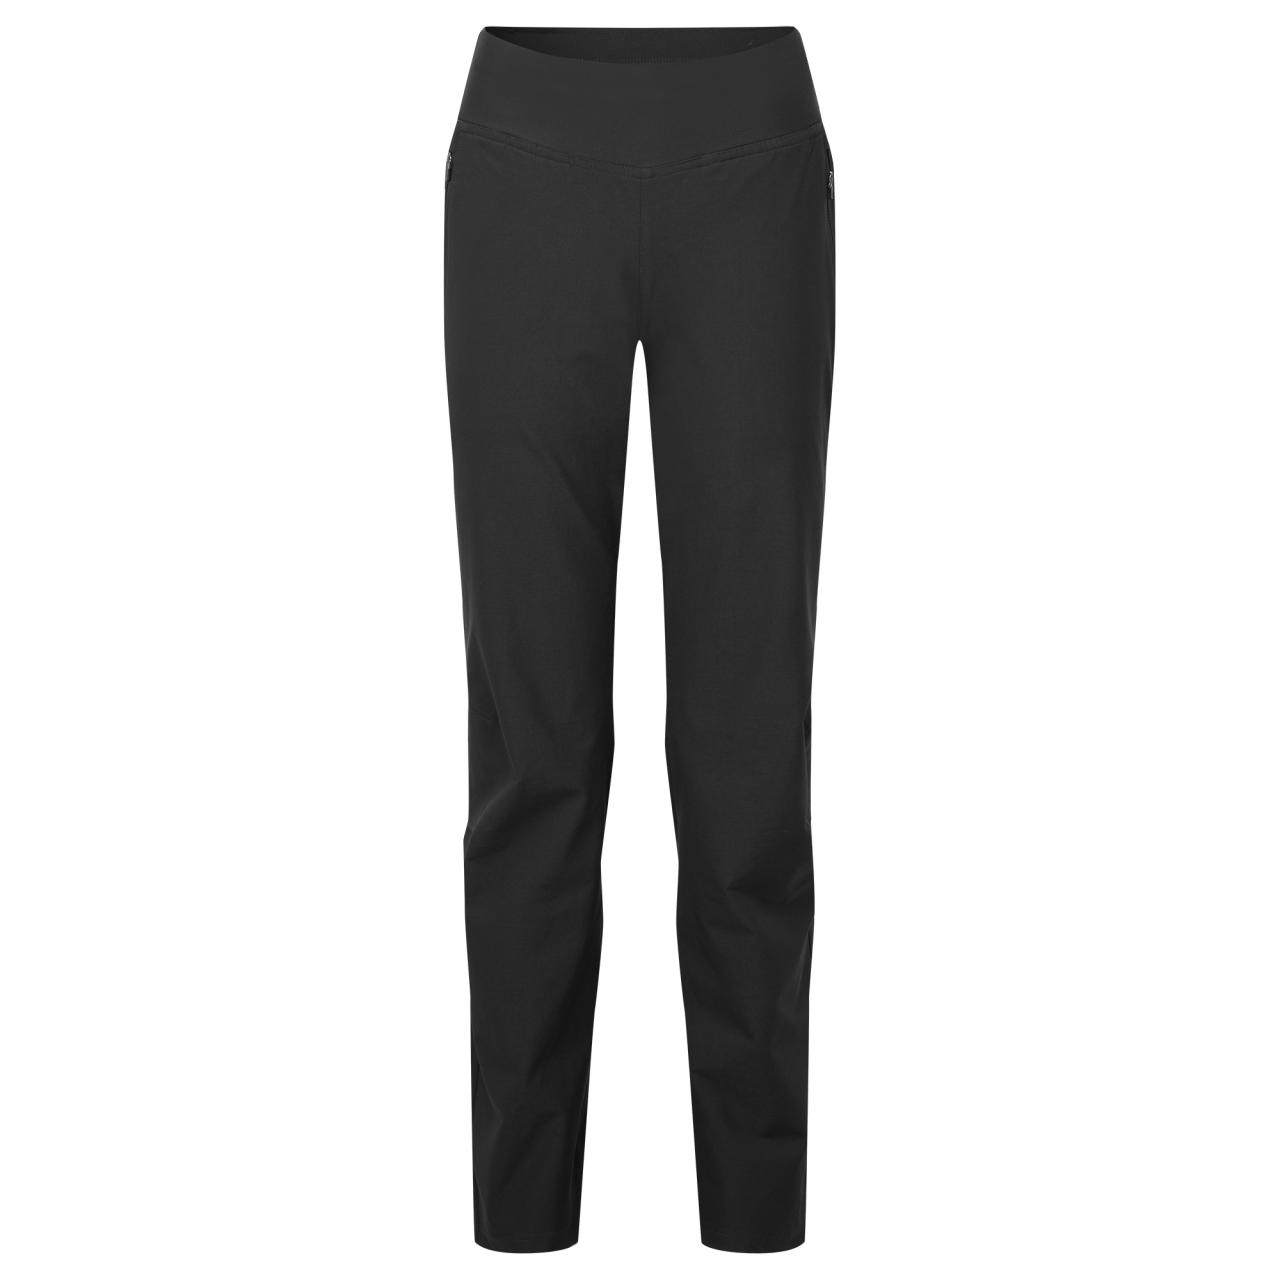 FEM TUCANA PANTS LONG LEG-BLACK-UK10/S Long dámské kalhoty černé